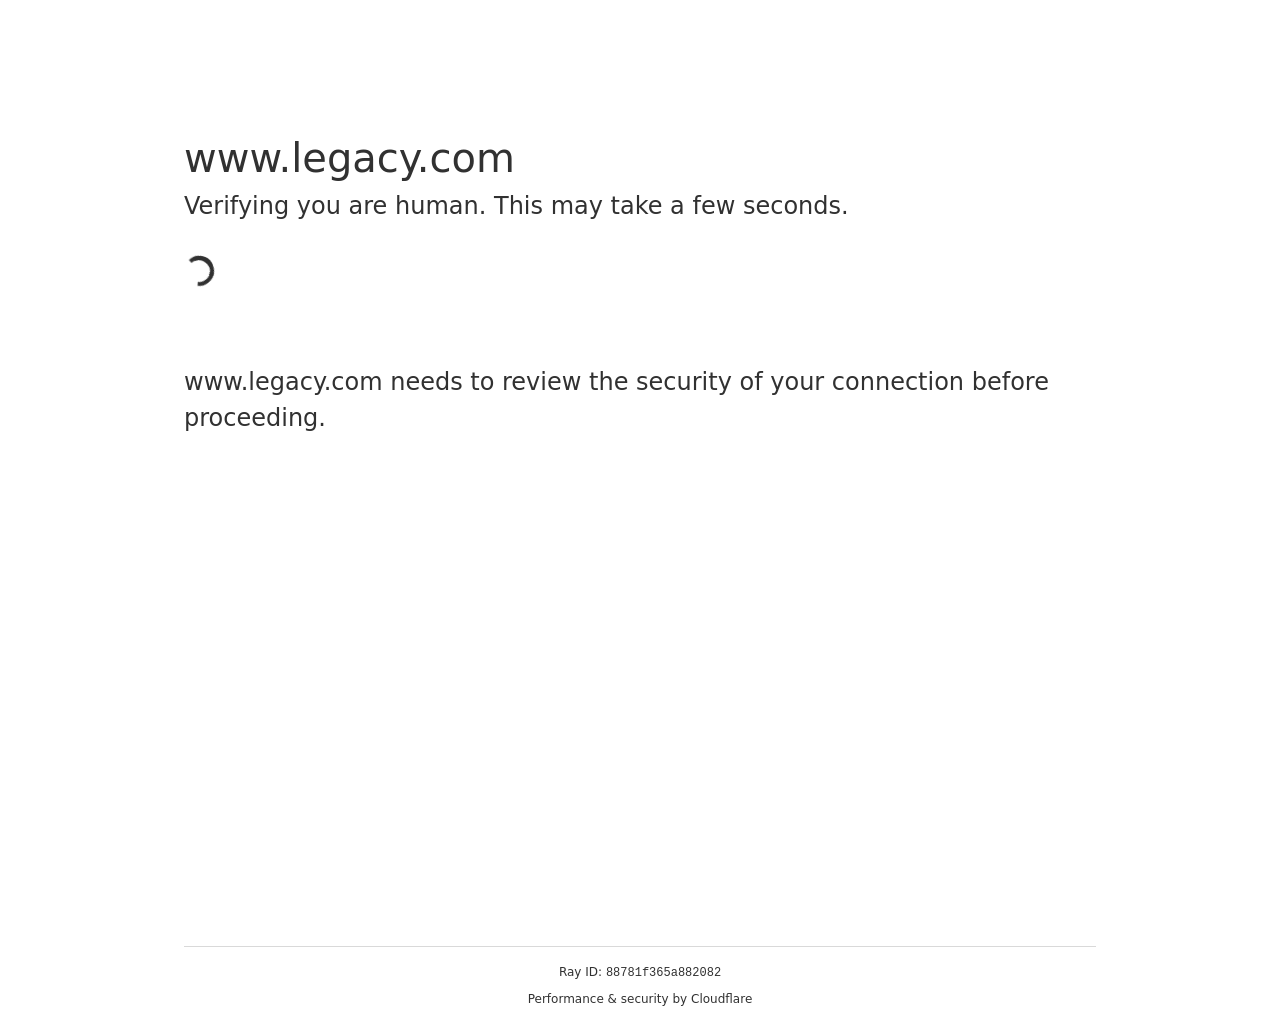 legacy.com